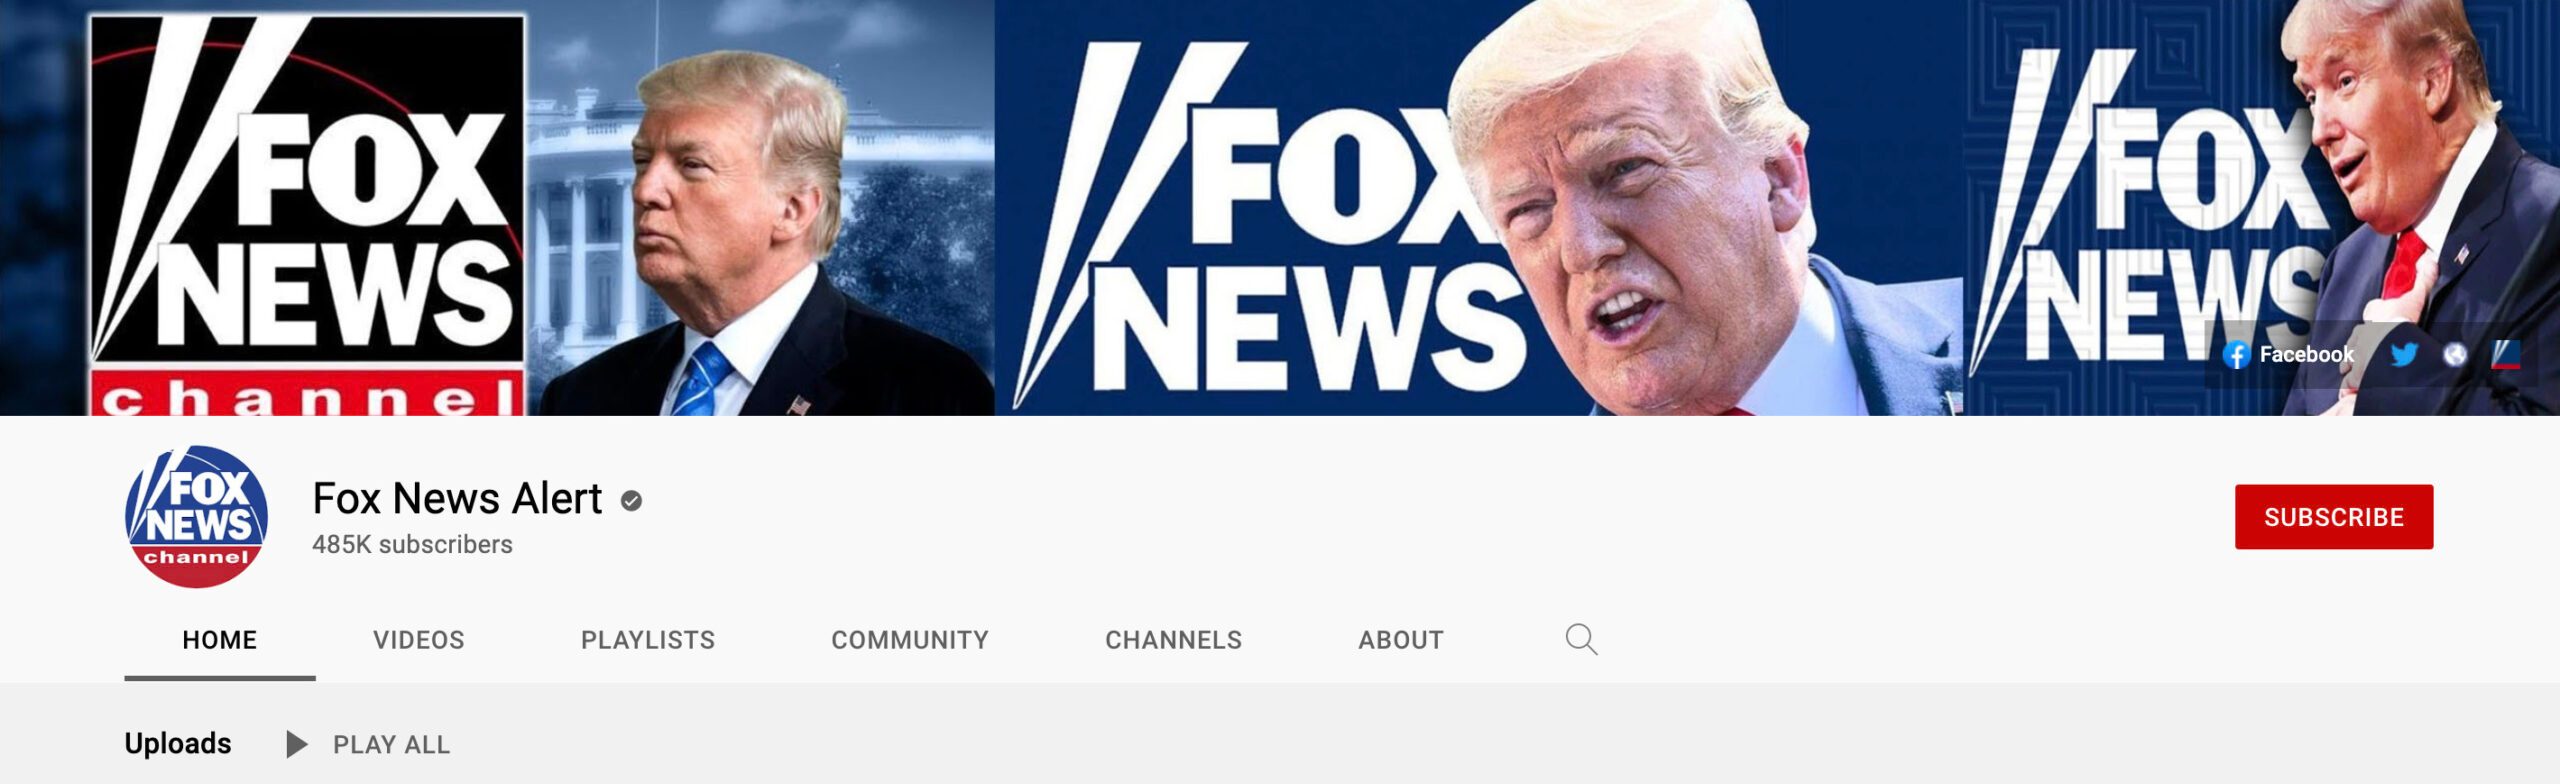 Los canales de YouTube verificados están publicando miniaturas modificadas en los videos de Fox News en cuentas llamadas Fox News Alert.